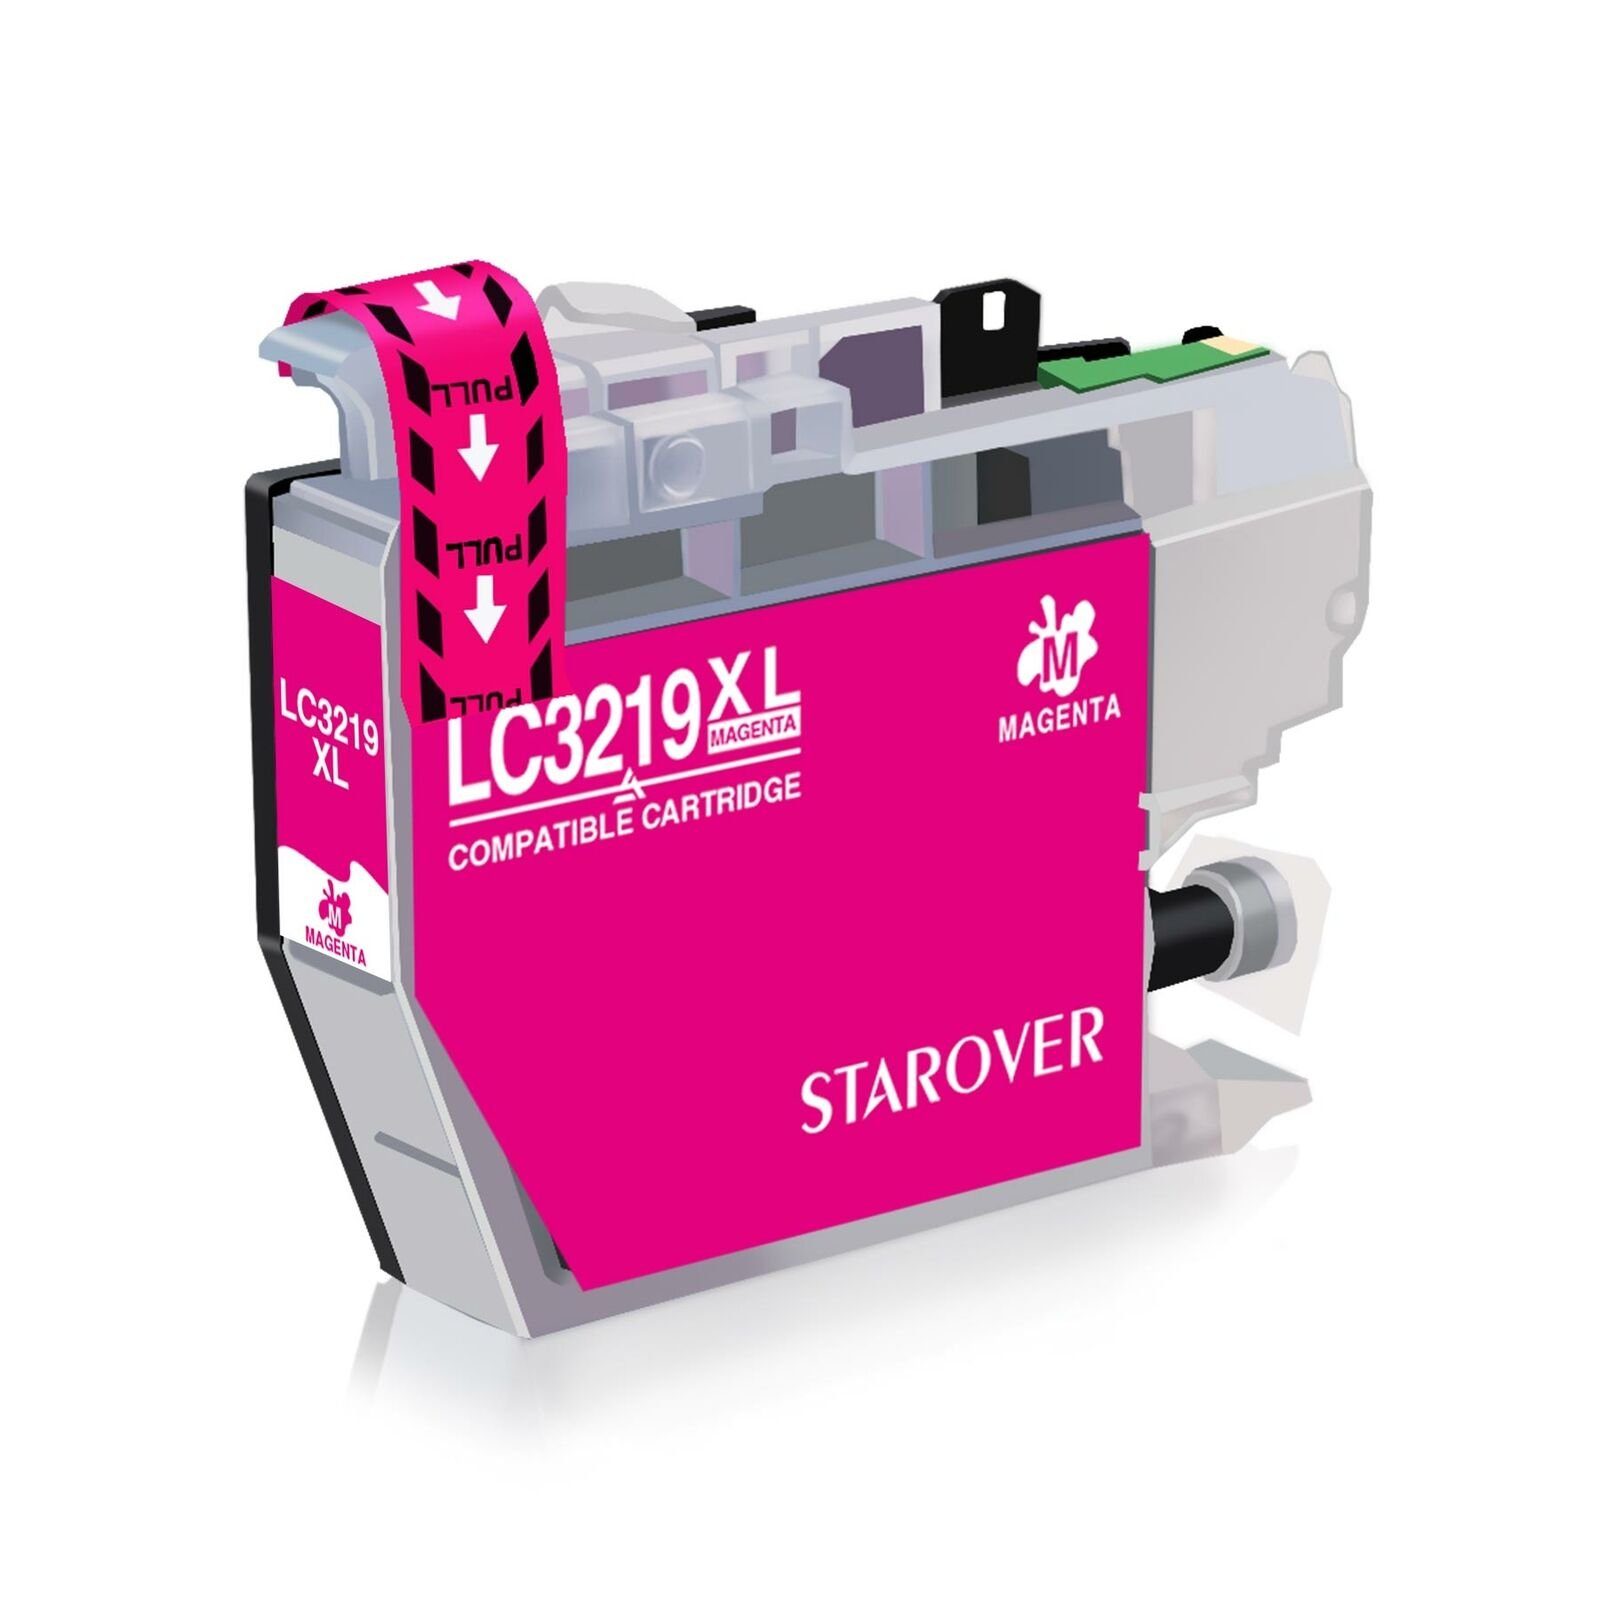 STAROVER Druckerpatronen kompatibel für Brother LC-3219XL LC3217 XXL Tintenpatrone (MFC-J5330DW MFC-J5335DW MFC-J5730DW MFC-J5930DW, MFC-J6530DW MFC-J6930DW MFC-J6935DW Drucker) 1 Magenta